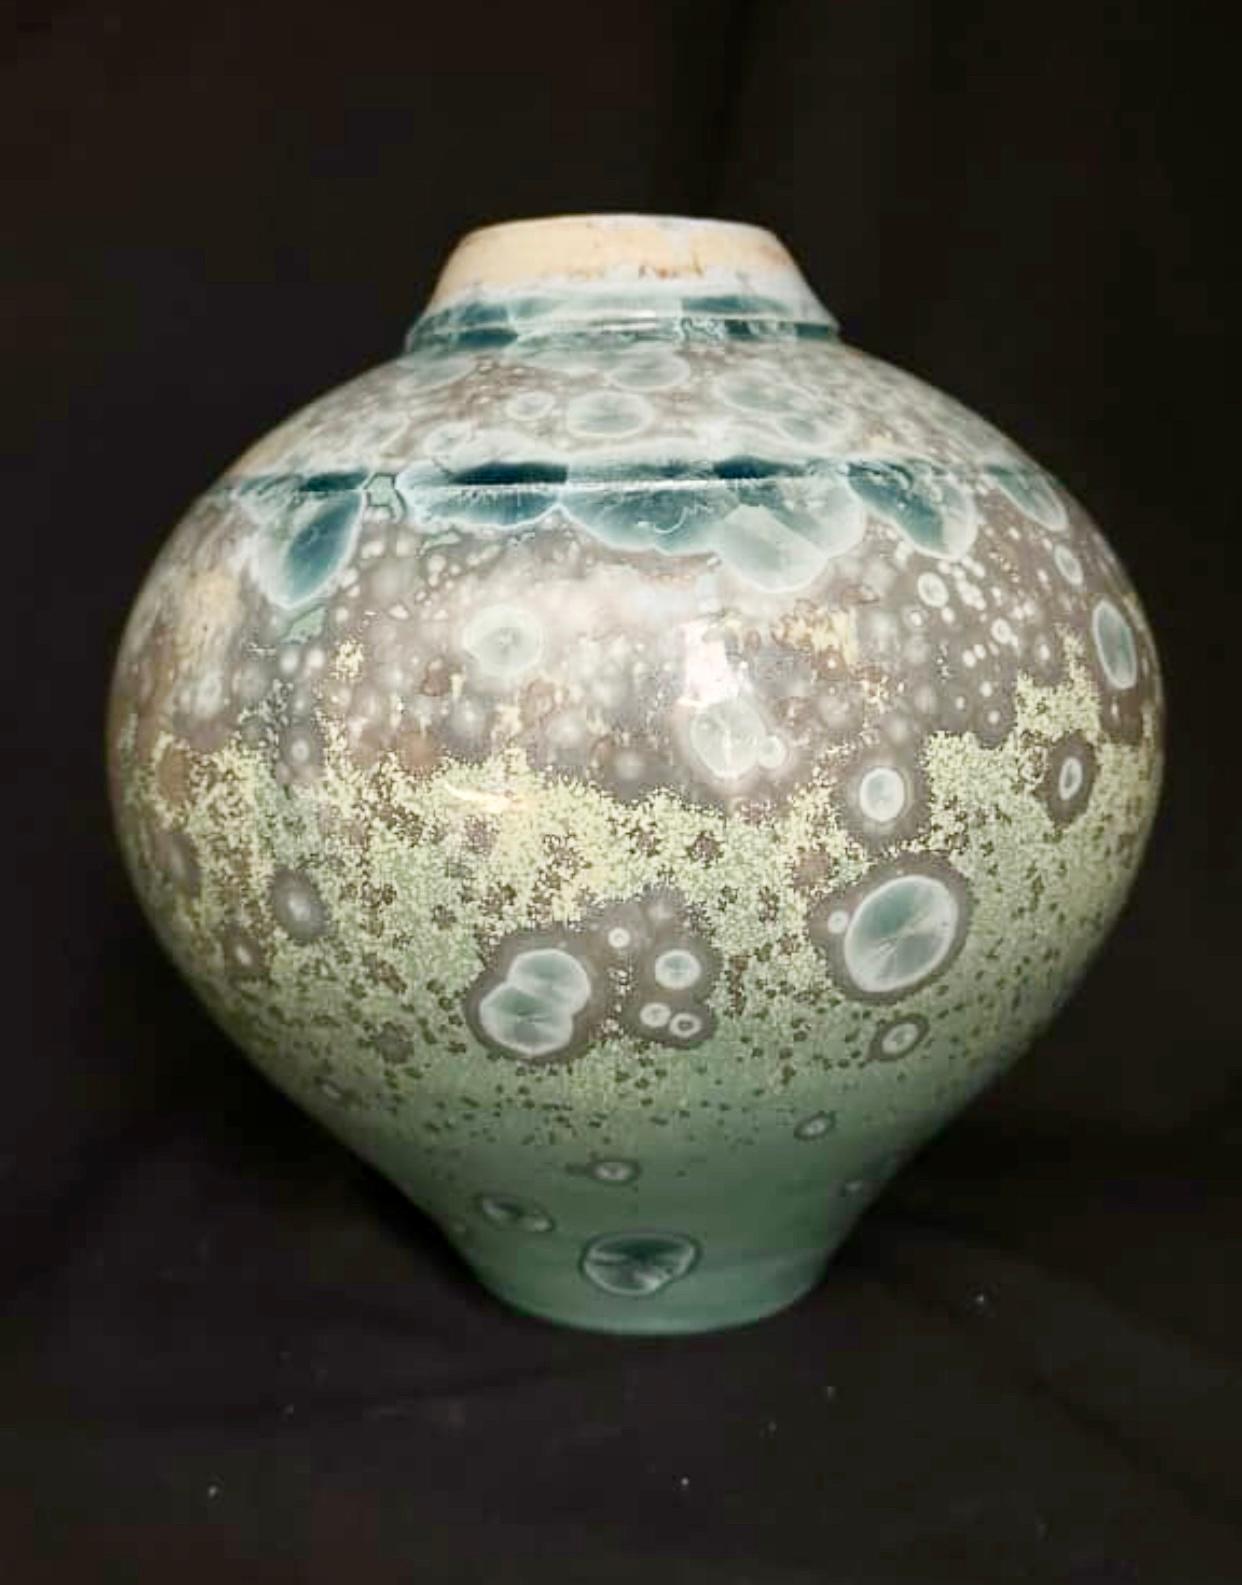 Porzellanvase des australischen Keramikers Anthony Conway, 1989. Conway begann in den frühen 1980er Jahren als Töpfer oder Keramiker zu arbeiten. Diese Vase ist einzigartig mit seiner charakteristischen kristallinen Glasur versehen. Die blau/grünen